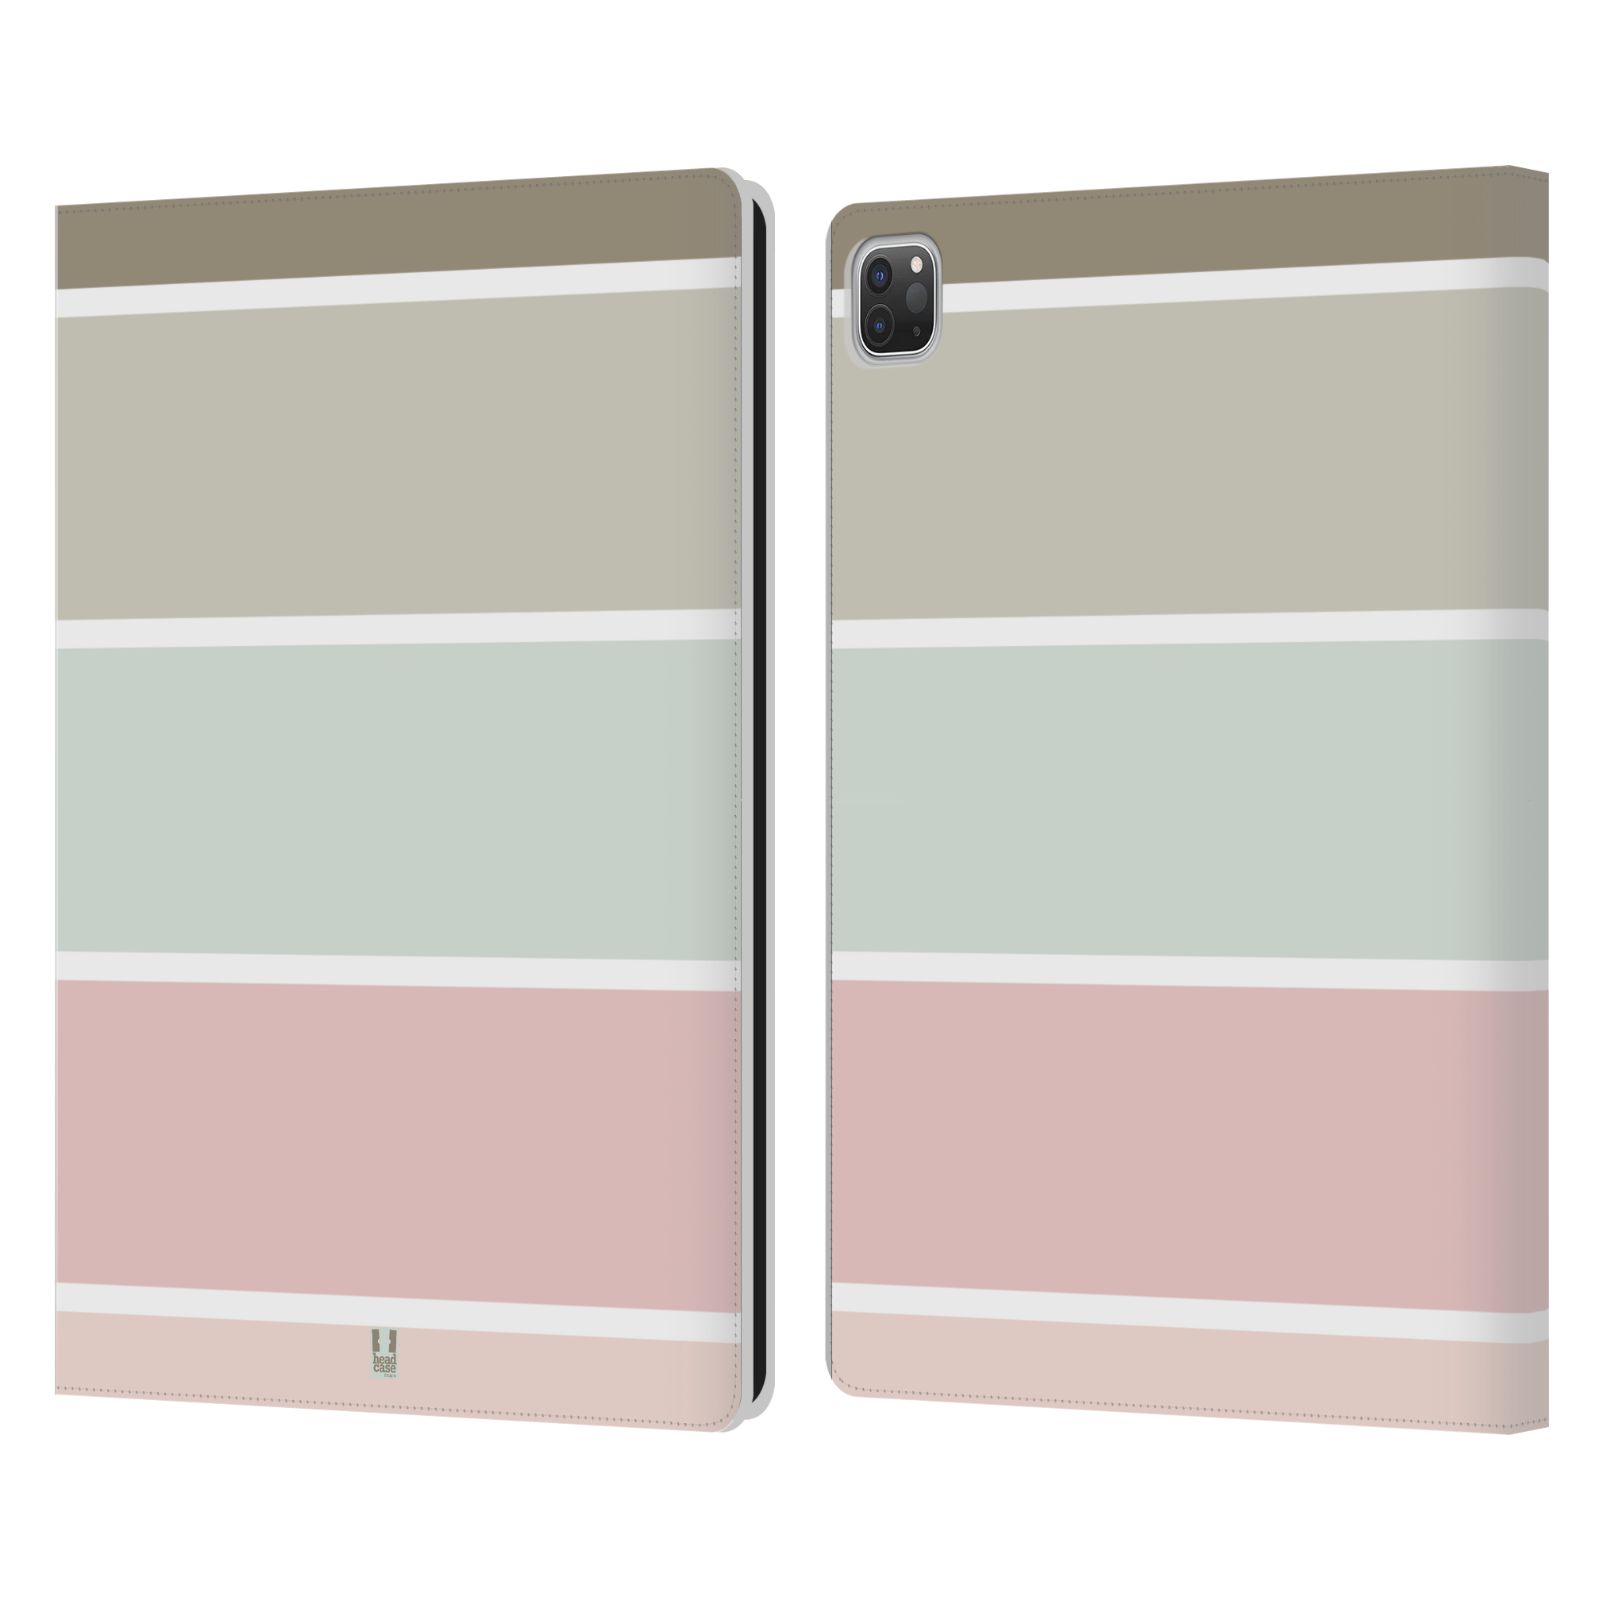 Pouzdro pro tablet Apple Ipad Pro 12.9 - HEAD CASE - Francouzský venkov pruhy růžová a šedá